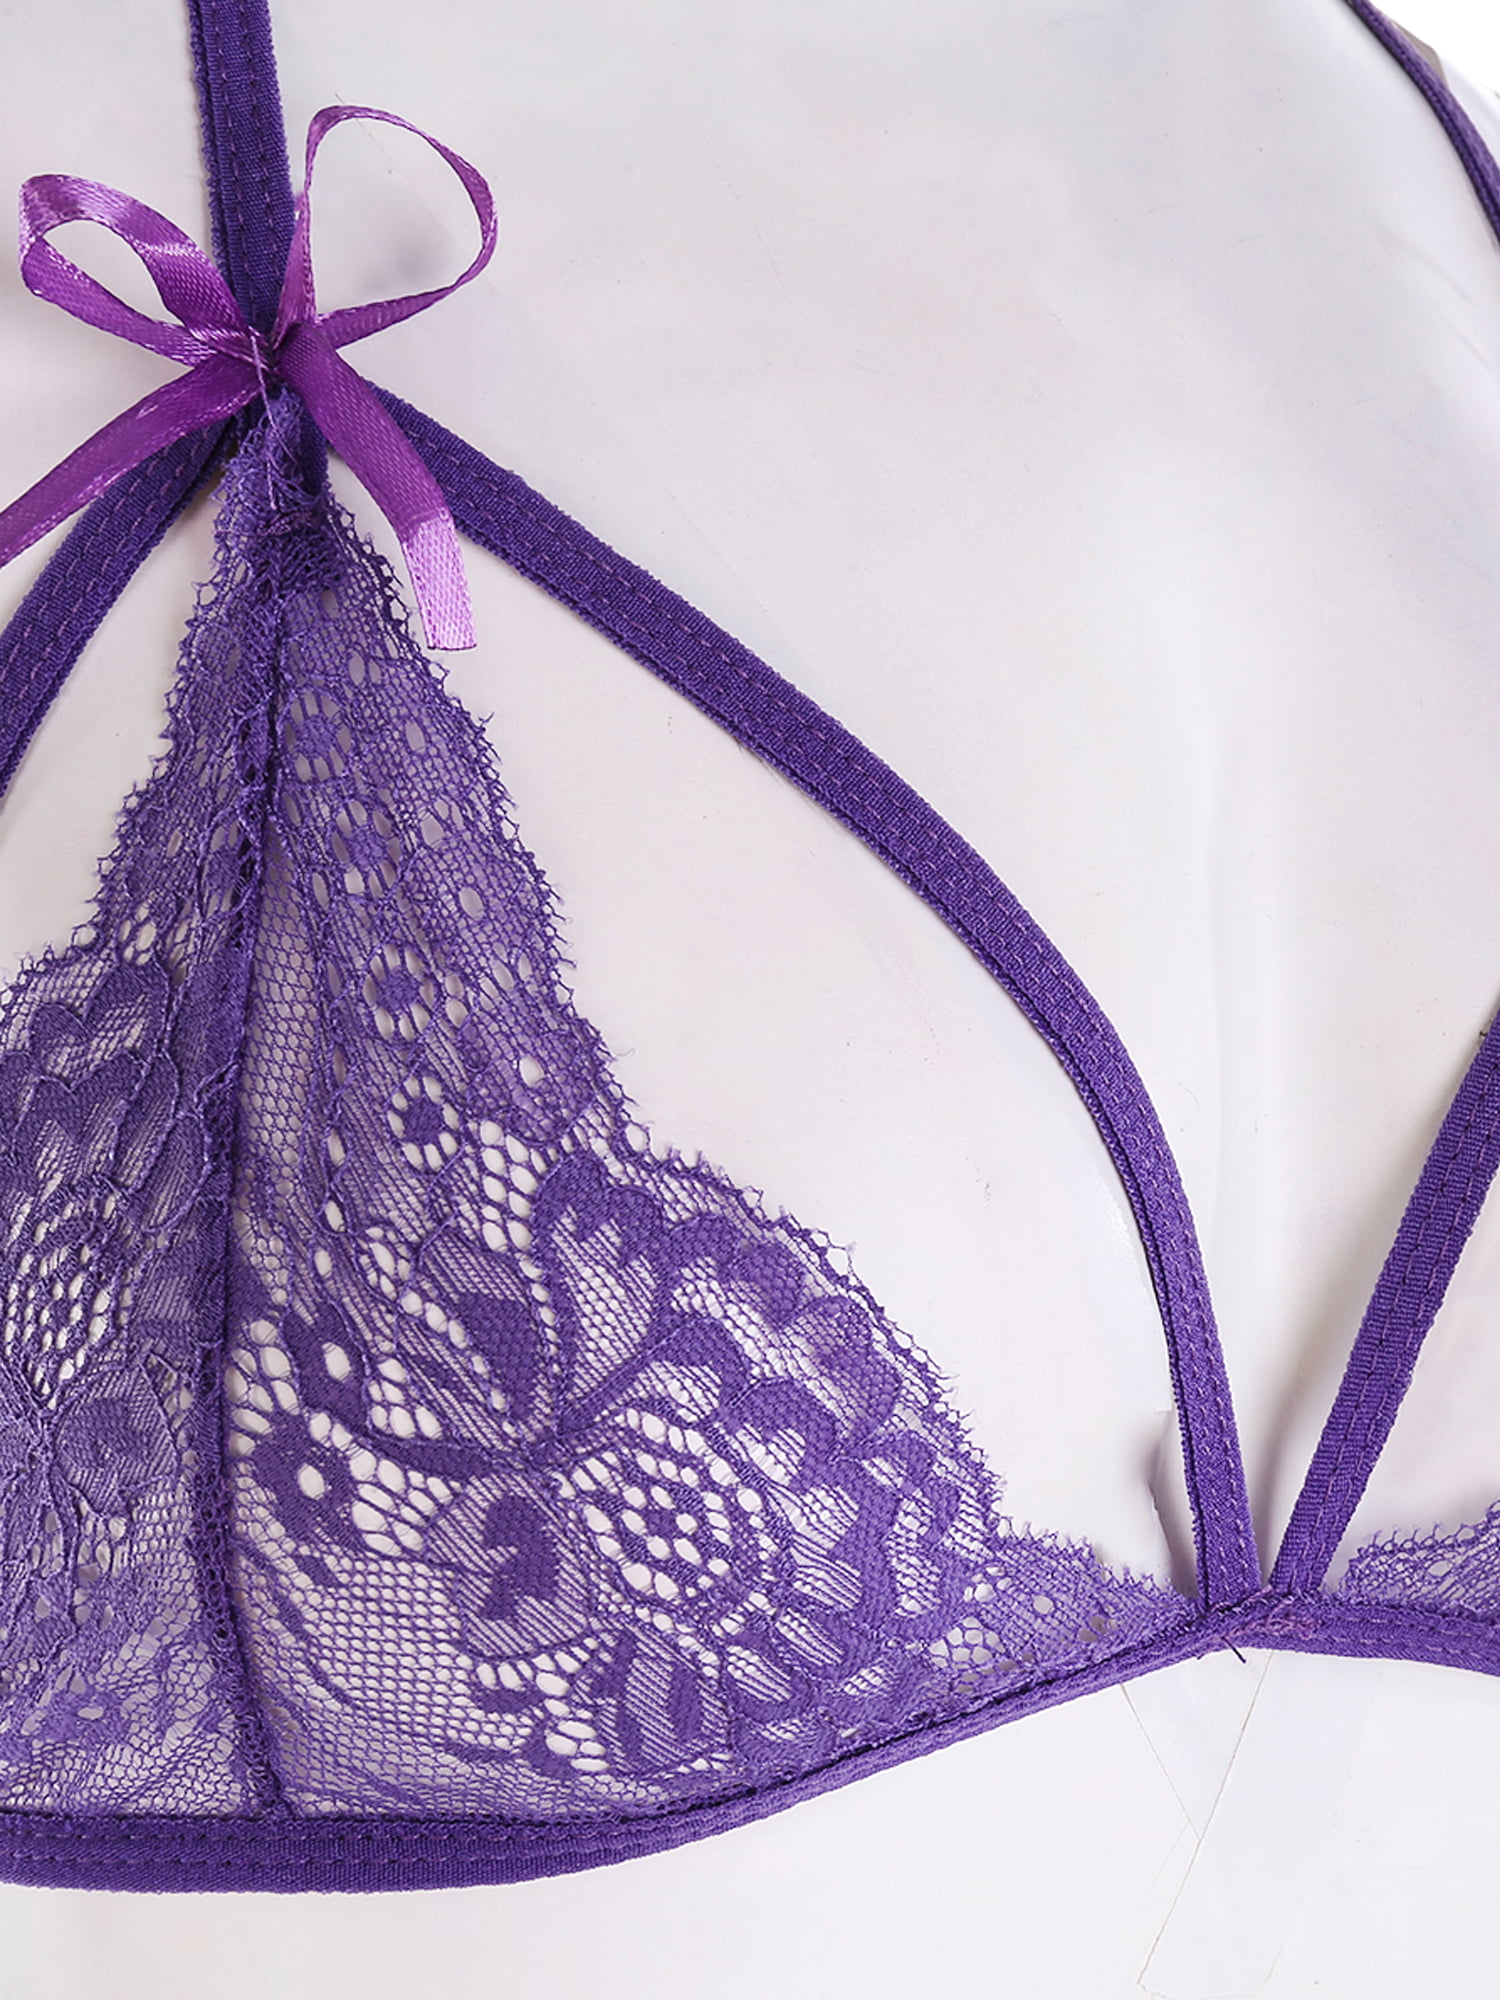 Purple Garter Slip, Stockings & Gloves Set Babydoll Women's Lingerie – Ninx